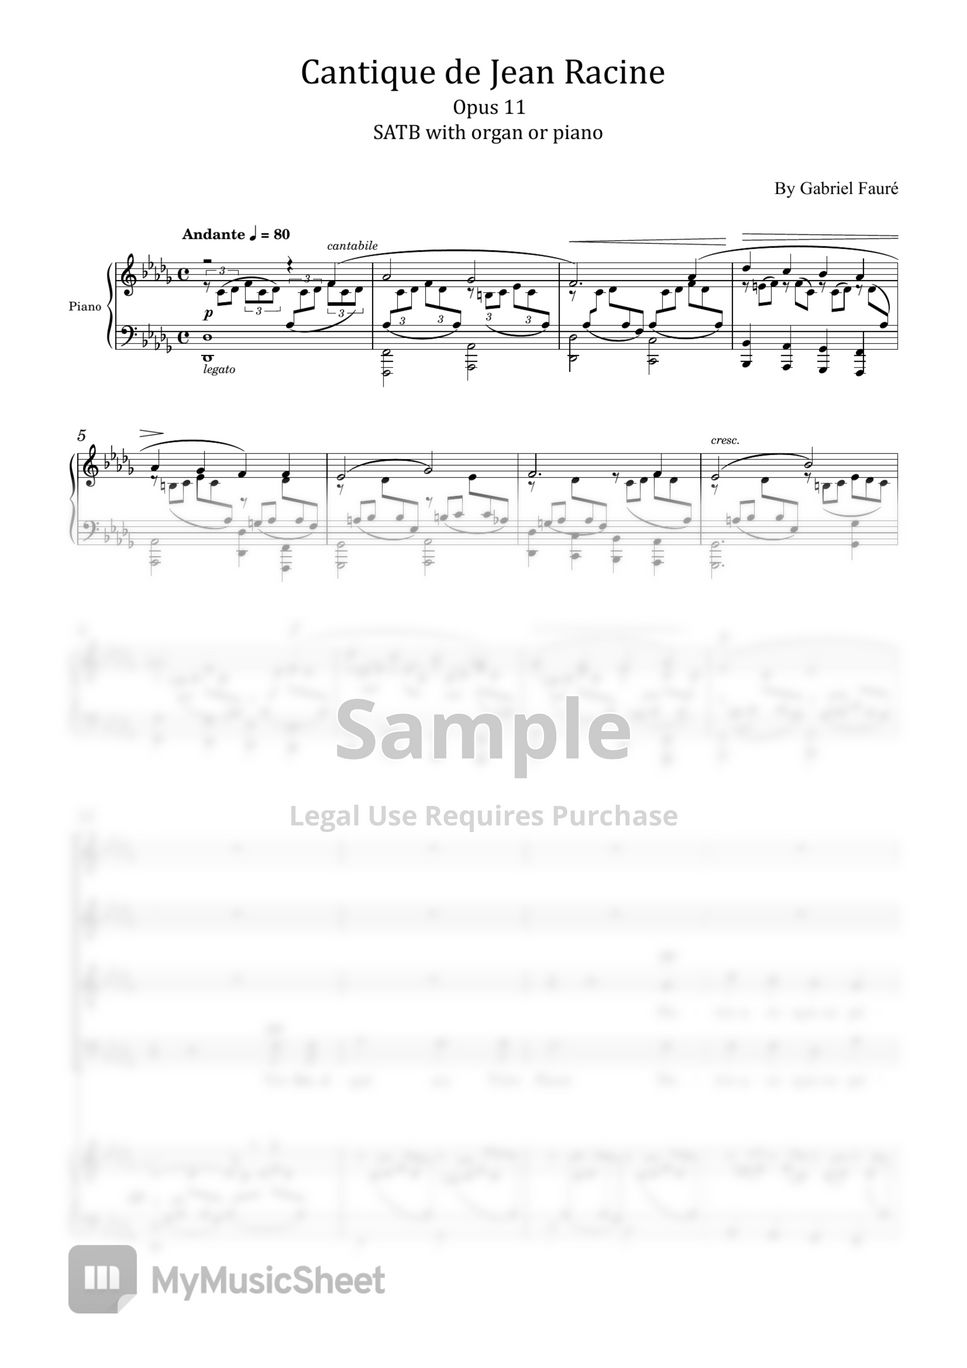 Gabriel Fauré - Cantique de Jean racine, Op.11 (SATB) (with organ or piano) by poon